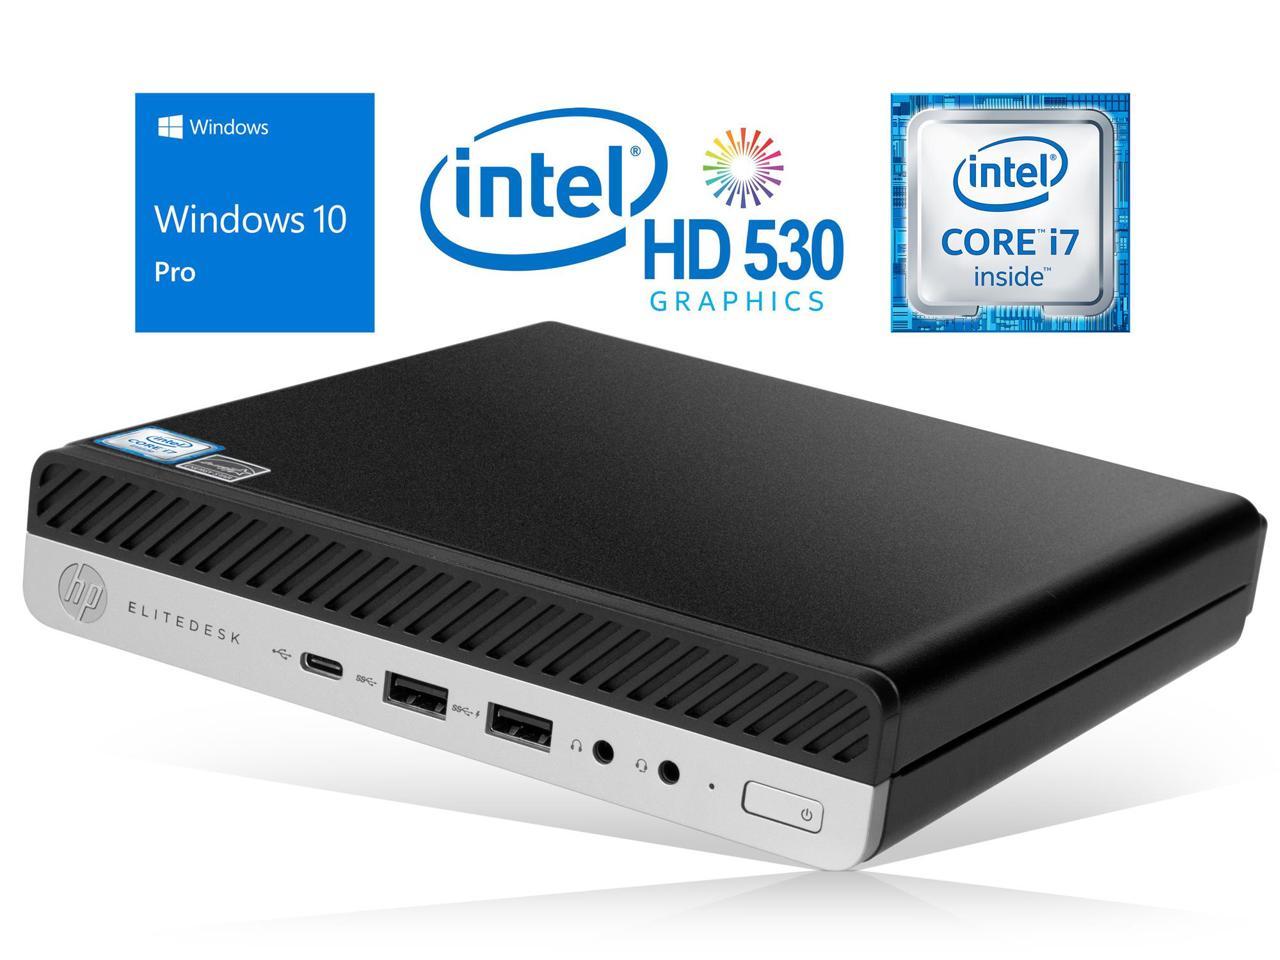 HP EliteDesk 800 G3 Mini PC, Intel Core i7-6700 Upto 4.0GHz, 16GB RAM, 256GB SSD, DisplayPort, Wi-Fi, Bluetooth, Windows 10 Pro